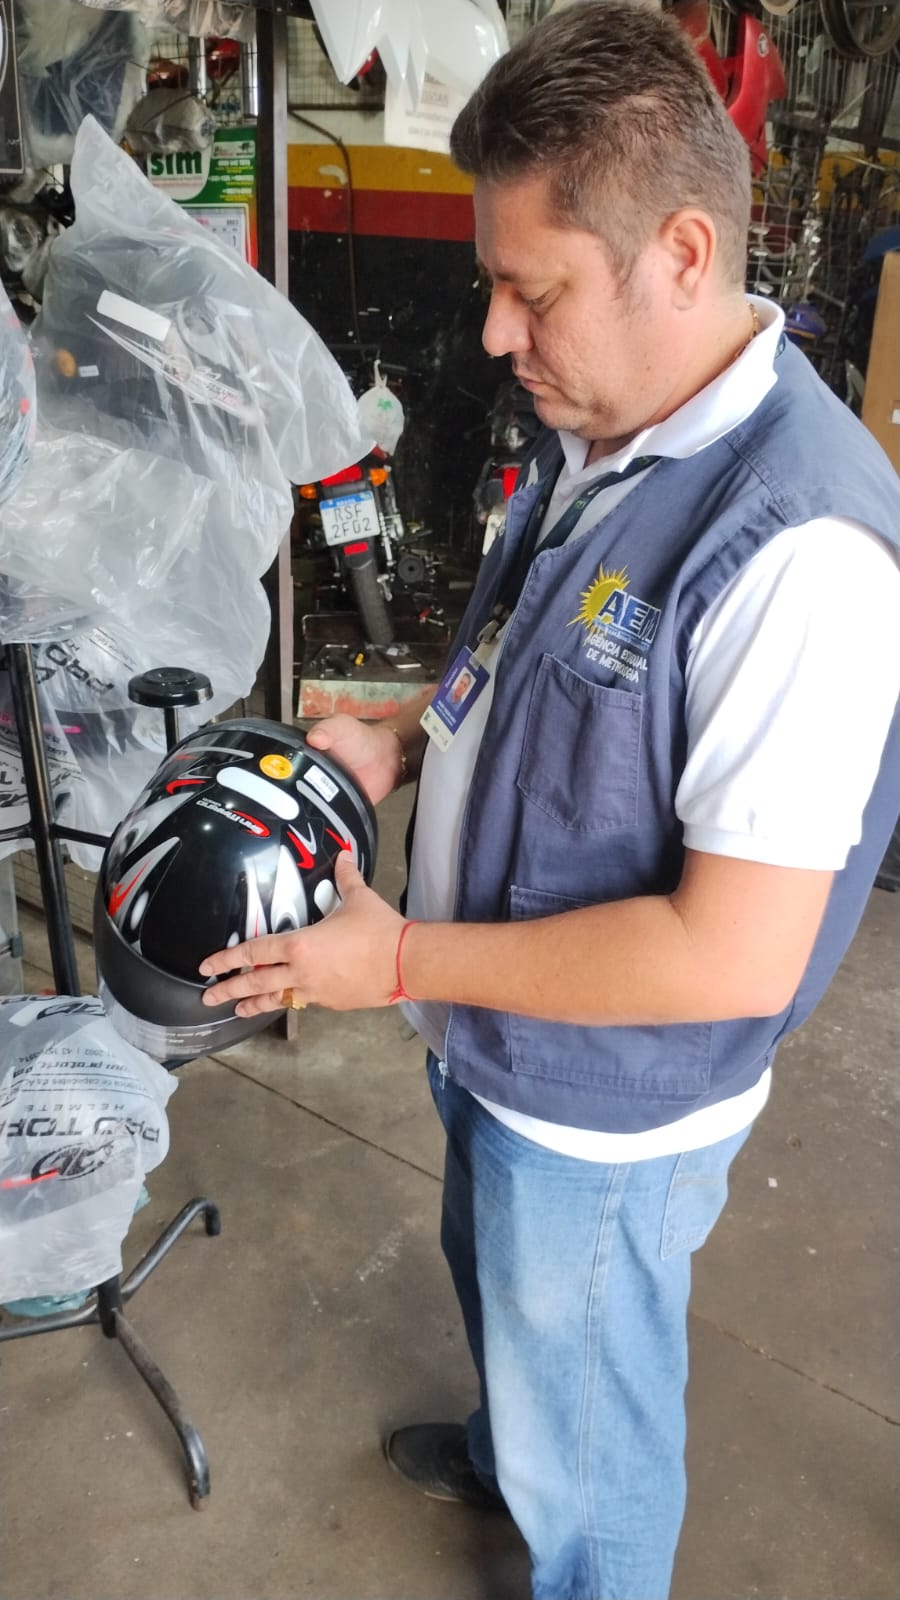  Equipe técnica da área de qualidade visita estabelecimentos comerciais para fiscalização de capacetes/Foto: Brenda Ramos/Governo do Tocantins e Divulgação